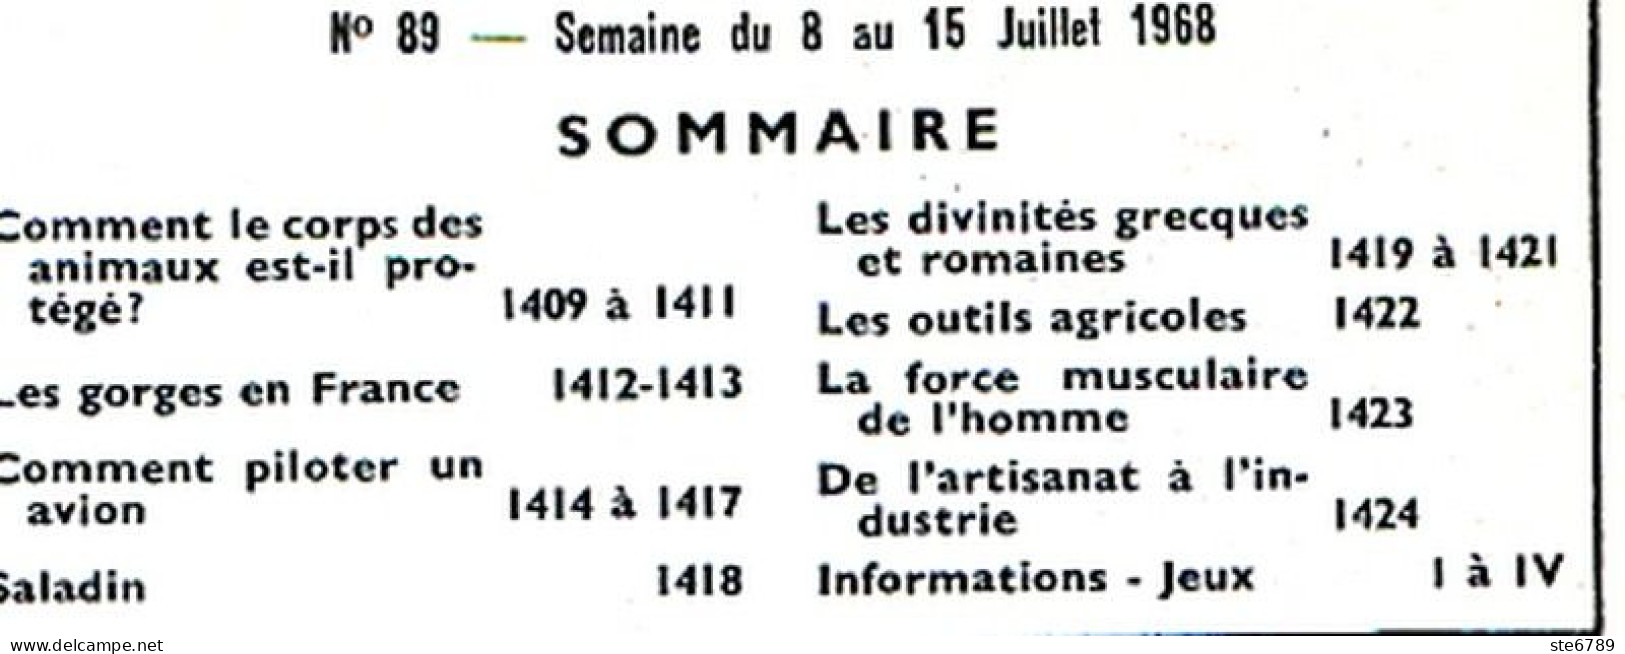 Tout L'univers 1968 N° 89 Comment Piloter Avion , Gorges De France , Saladin , Outils Agricoles , Divinités Greque - General Issues